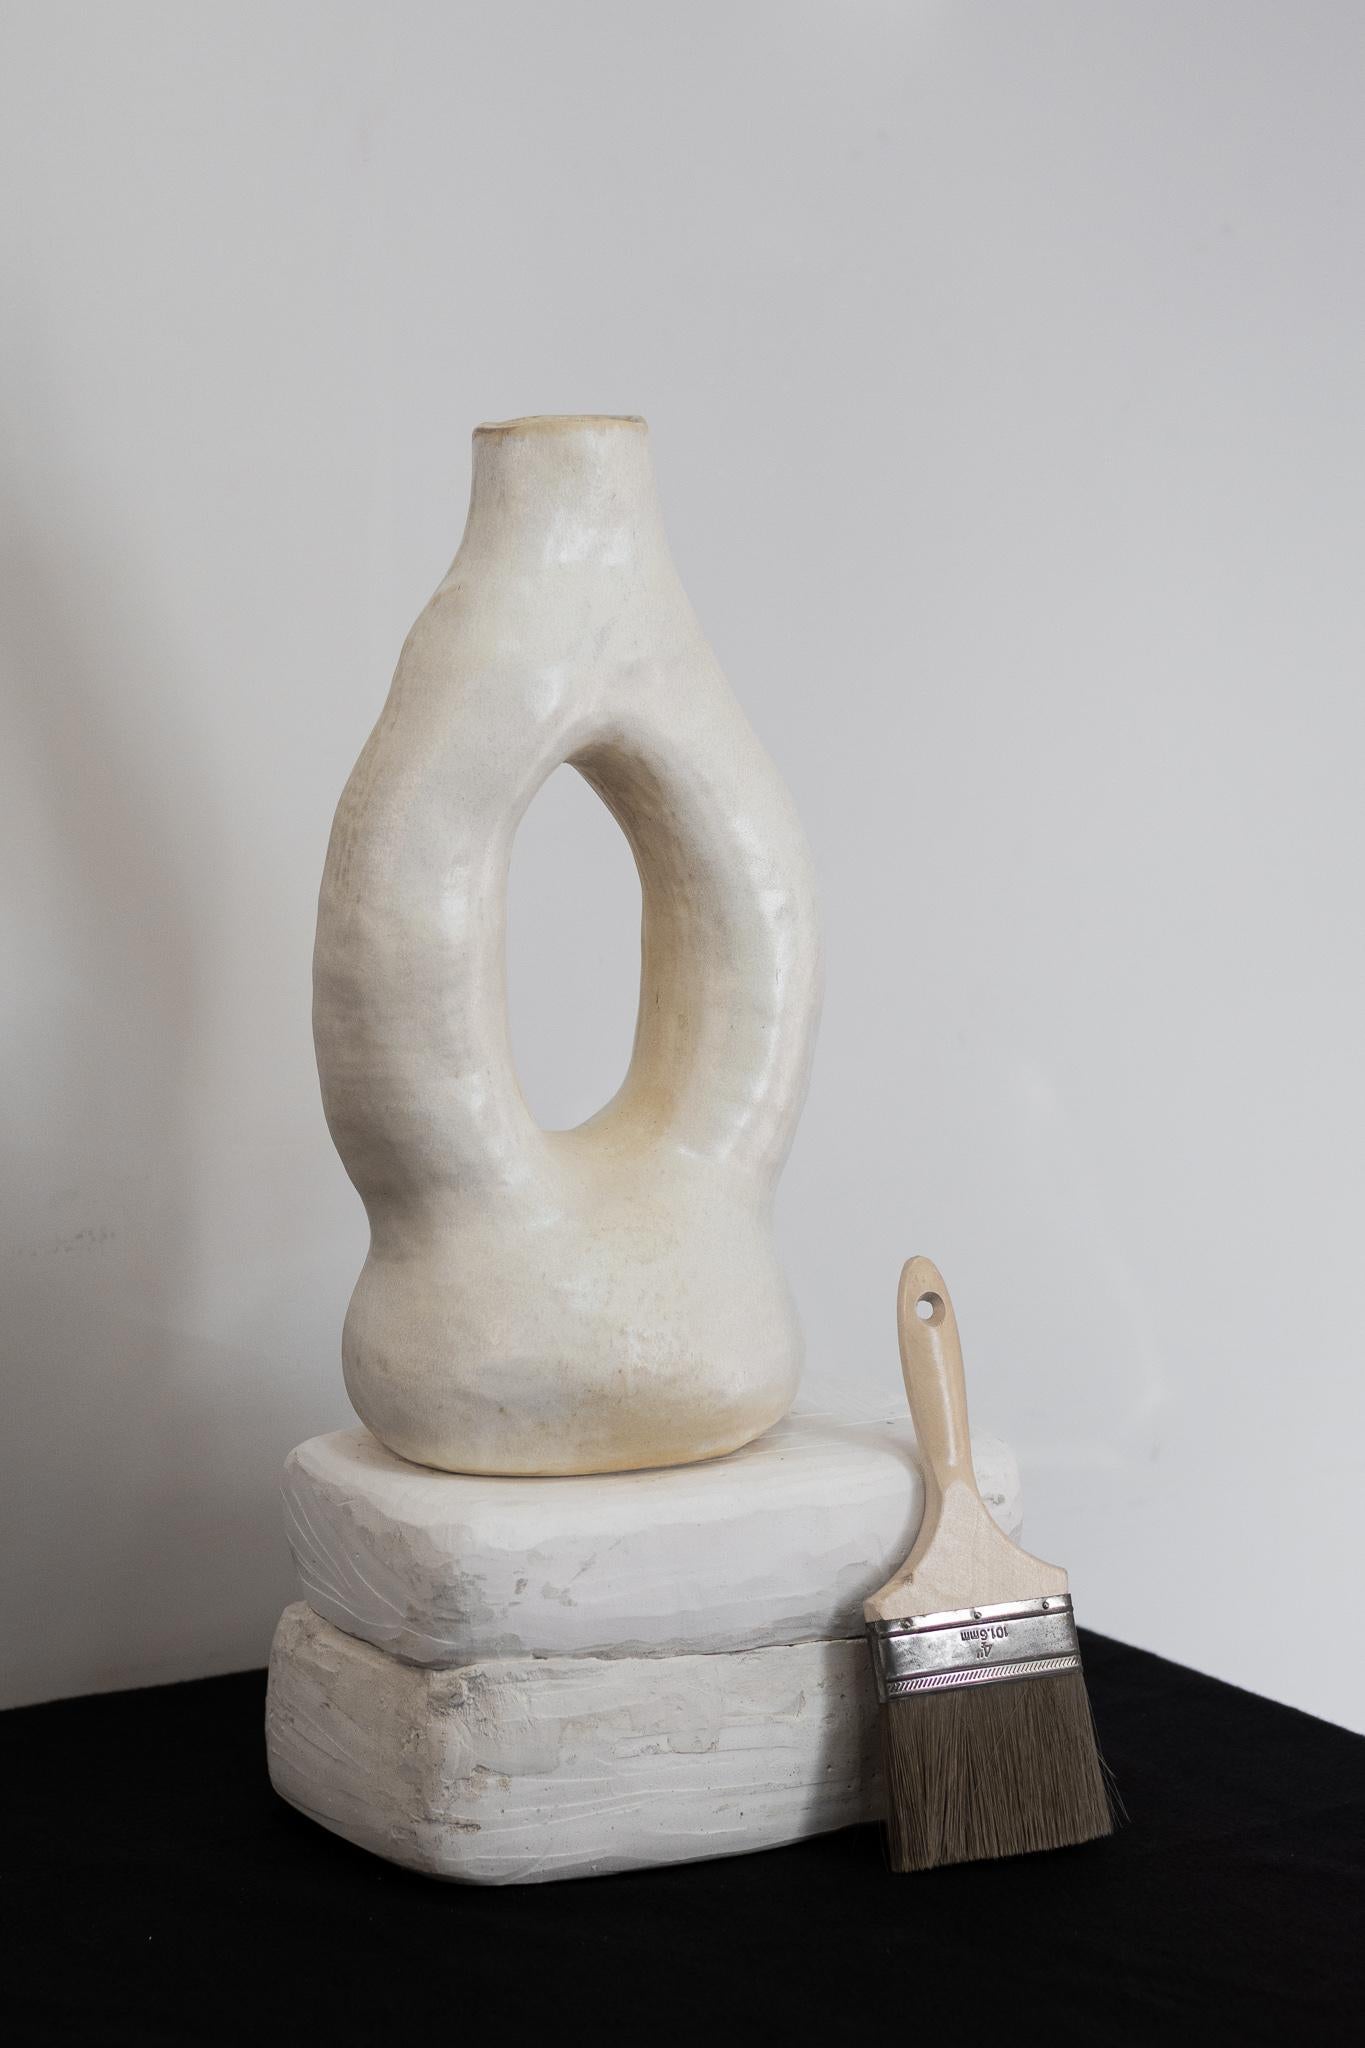 Le vase de la série Alba, en particulier le vase N.1, est une pièce unique qui respecte le processus artisanal. Fabriqué sans moule, chaque vase absorbe les contours et les textures distincts de la main de l'artiste, ce qui donne une forme nette et